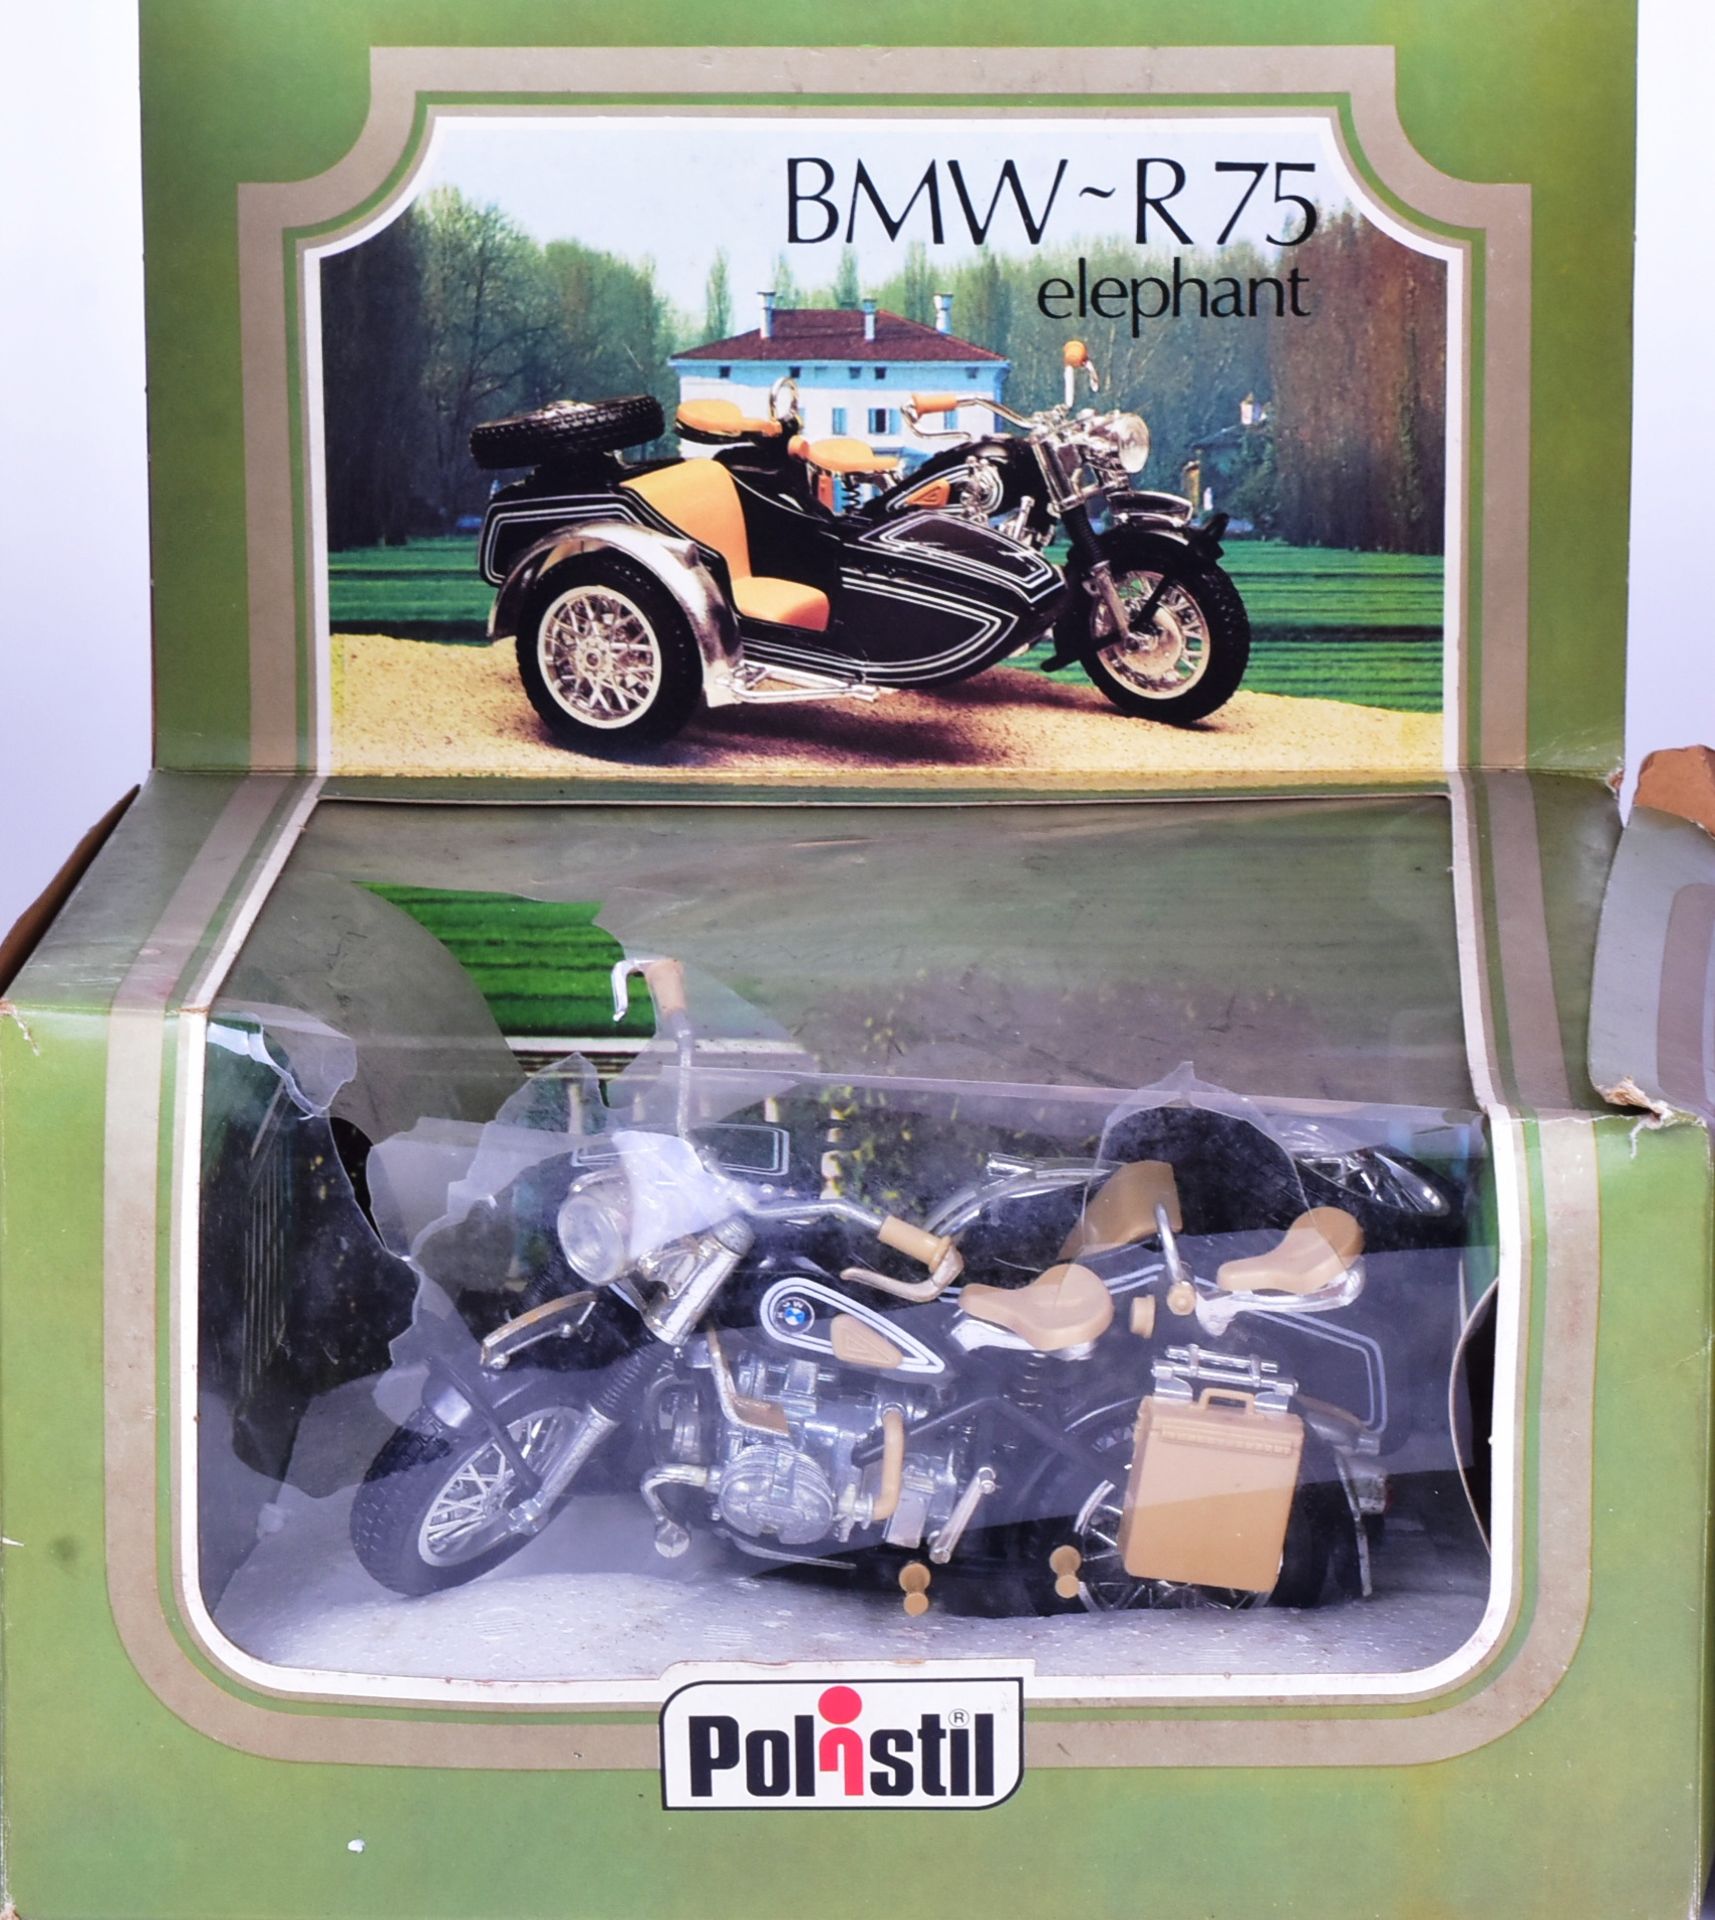 DIECAST - POLISTIL - FIVE BOXED MOTOR VEHICLE MODELS - Image 2 of 5